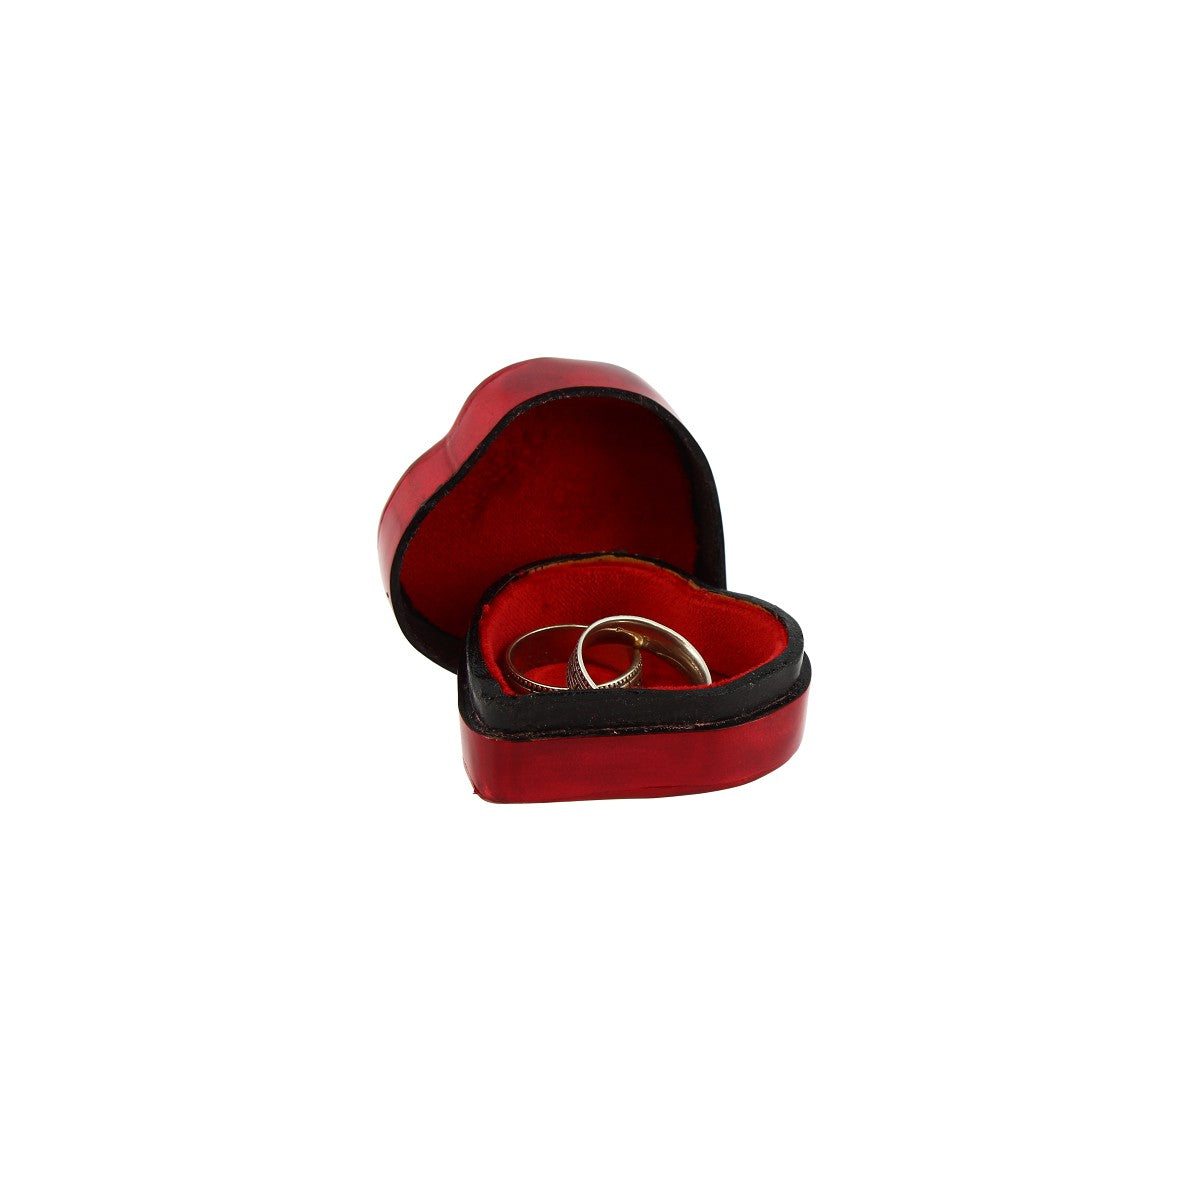 Portagioie bomboniera a forma di cuore realizzata in cuoio rosso per gioielli